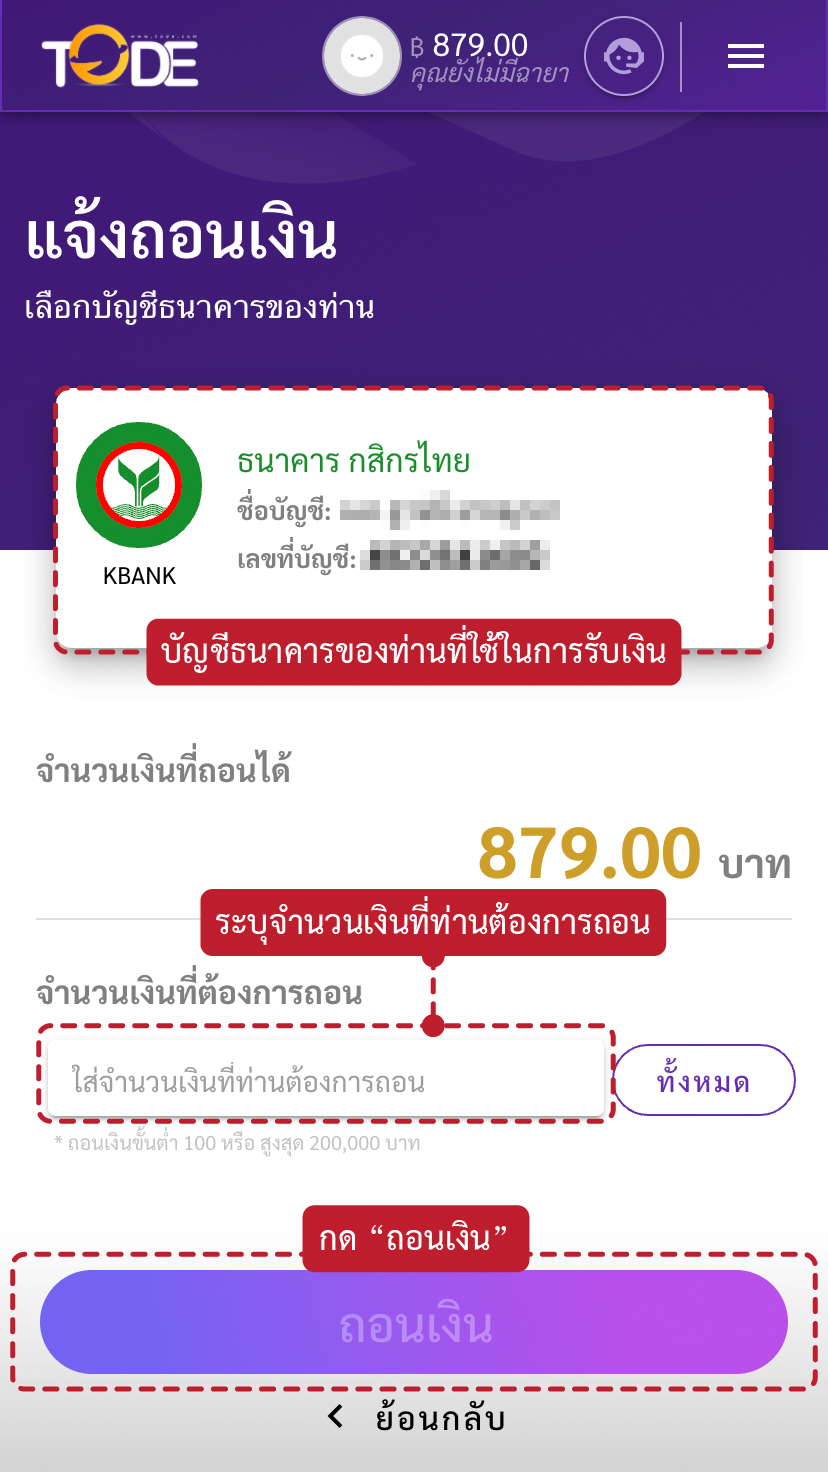 ขั้นตอนวิธีการถอนเงินเว็บโต๊ดเว็บแทงหวยอันดับ1ของไทยสูงสุดบาทละ1200